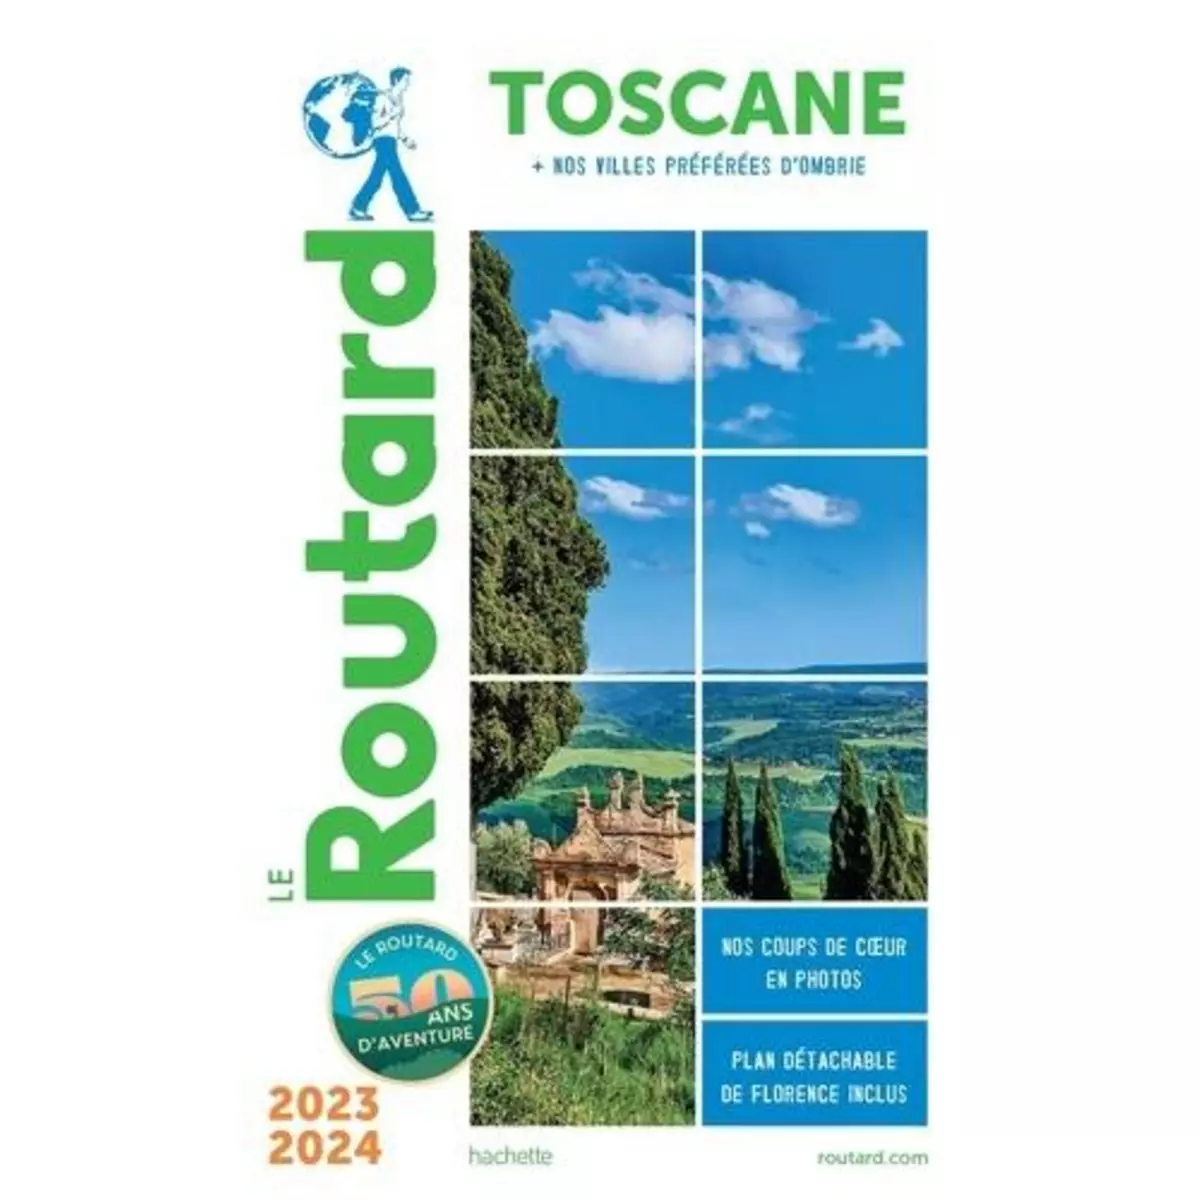  TOSCANE, OMBRIE. EDITION 2023-2024. AVEC 1 PLAN DETACHABLE, Le Routard